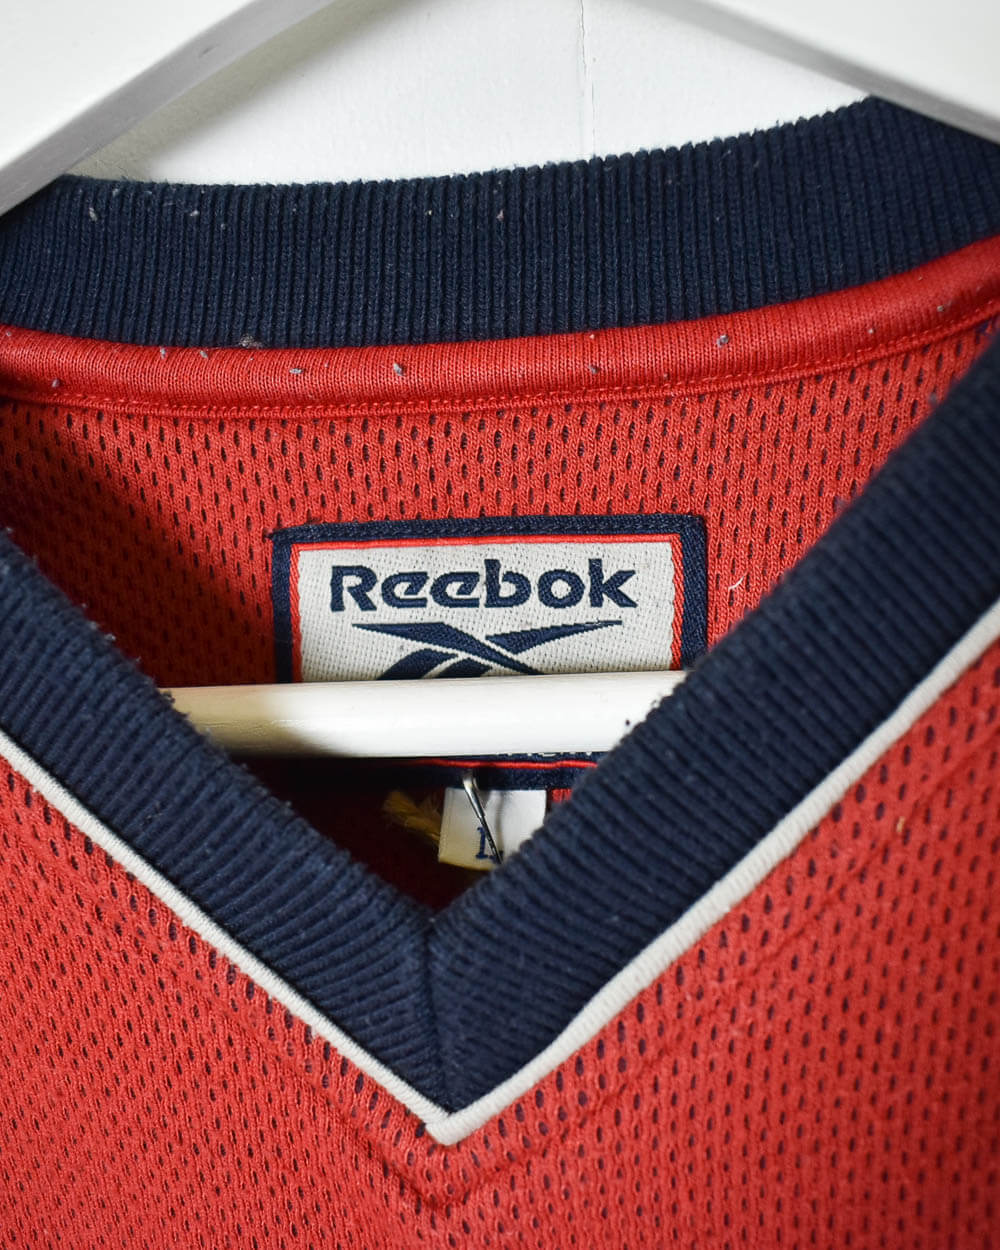 Red Reebok Athletic Department Sweatshirt - Large